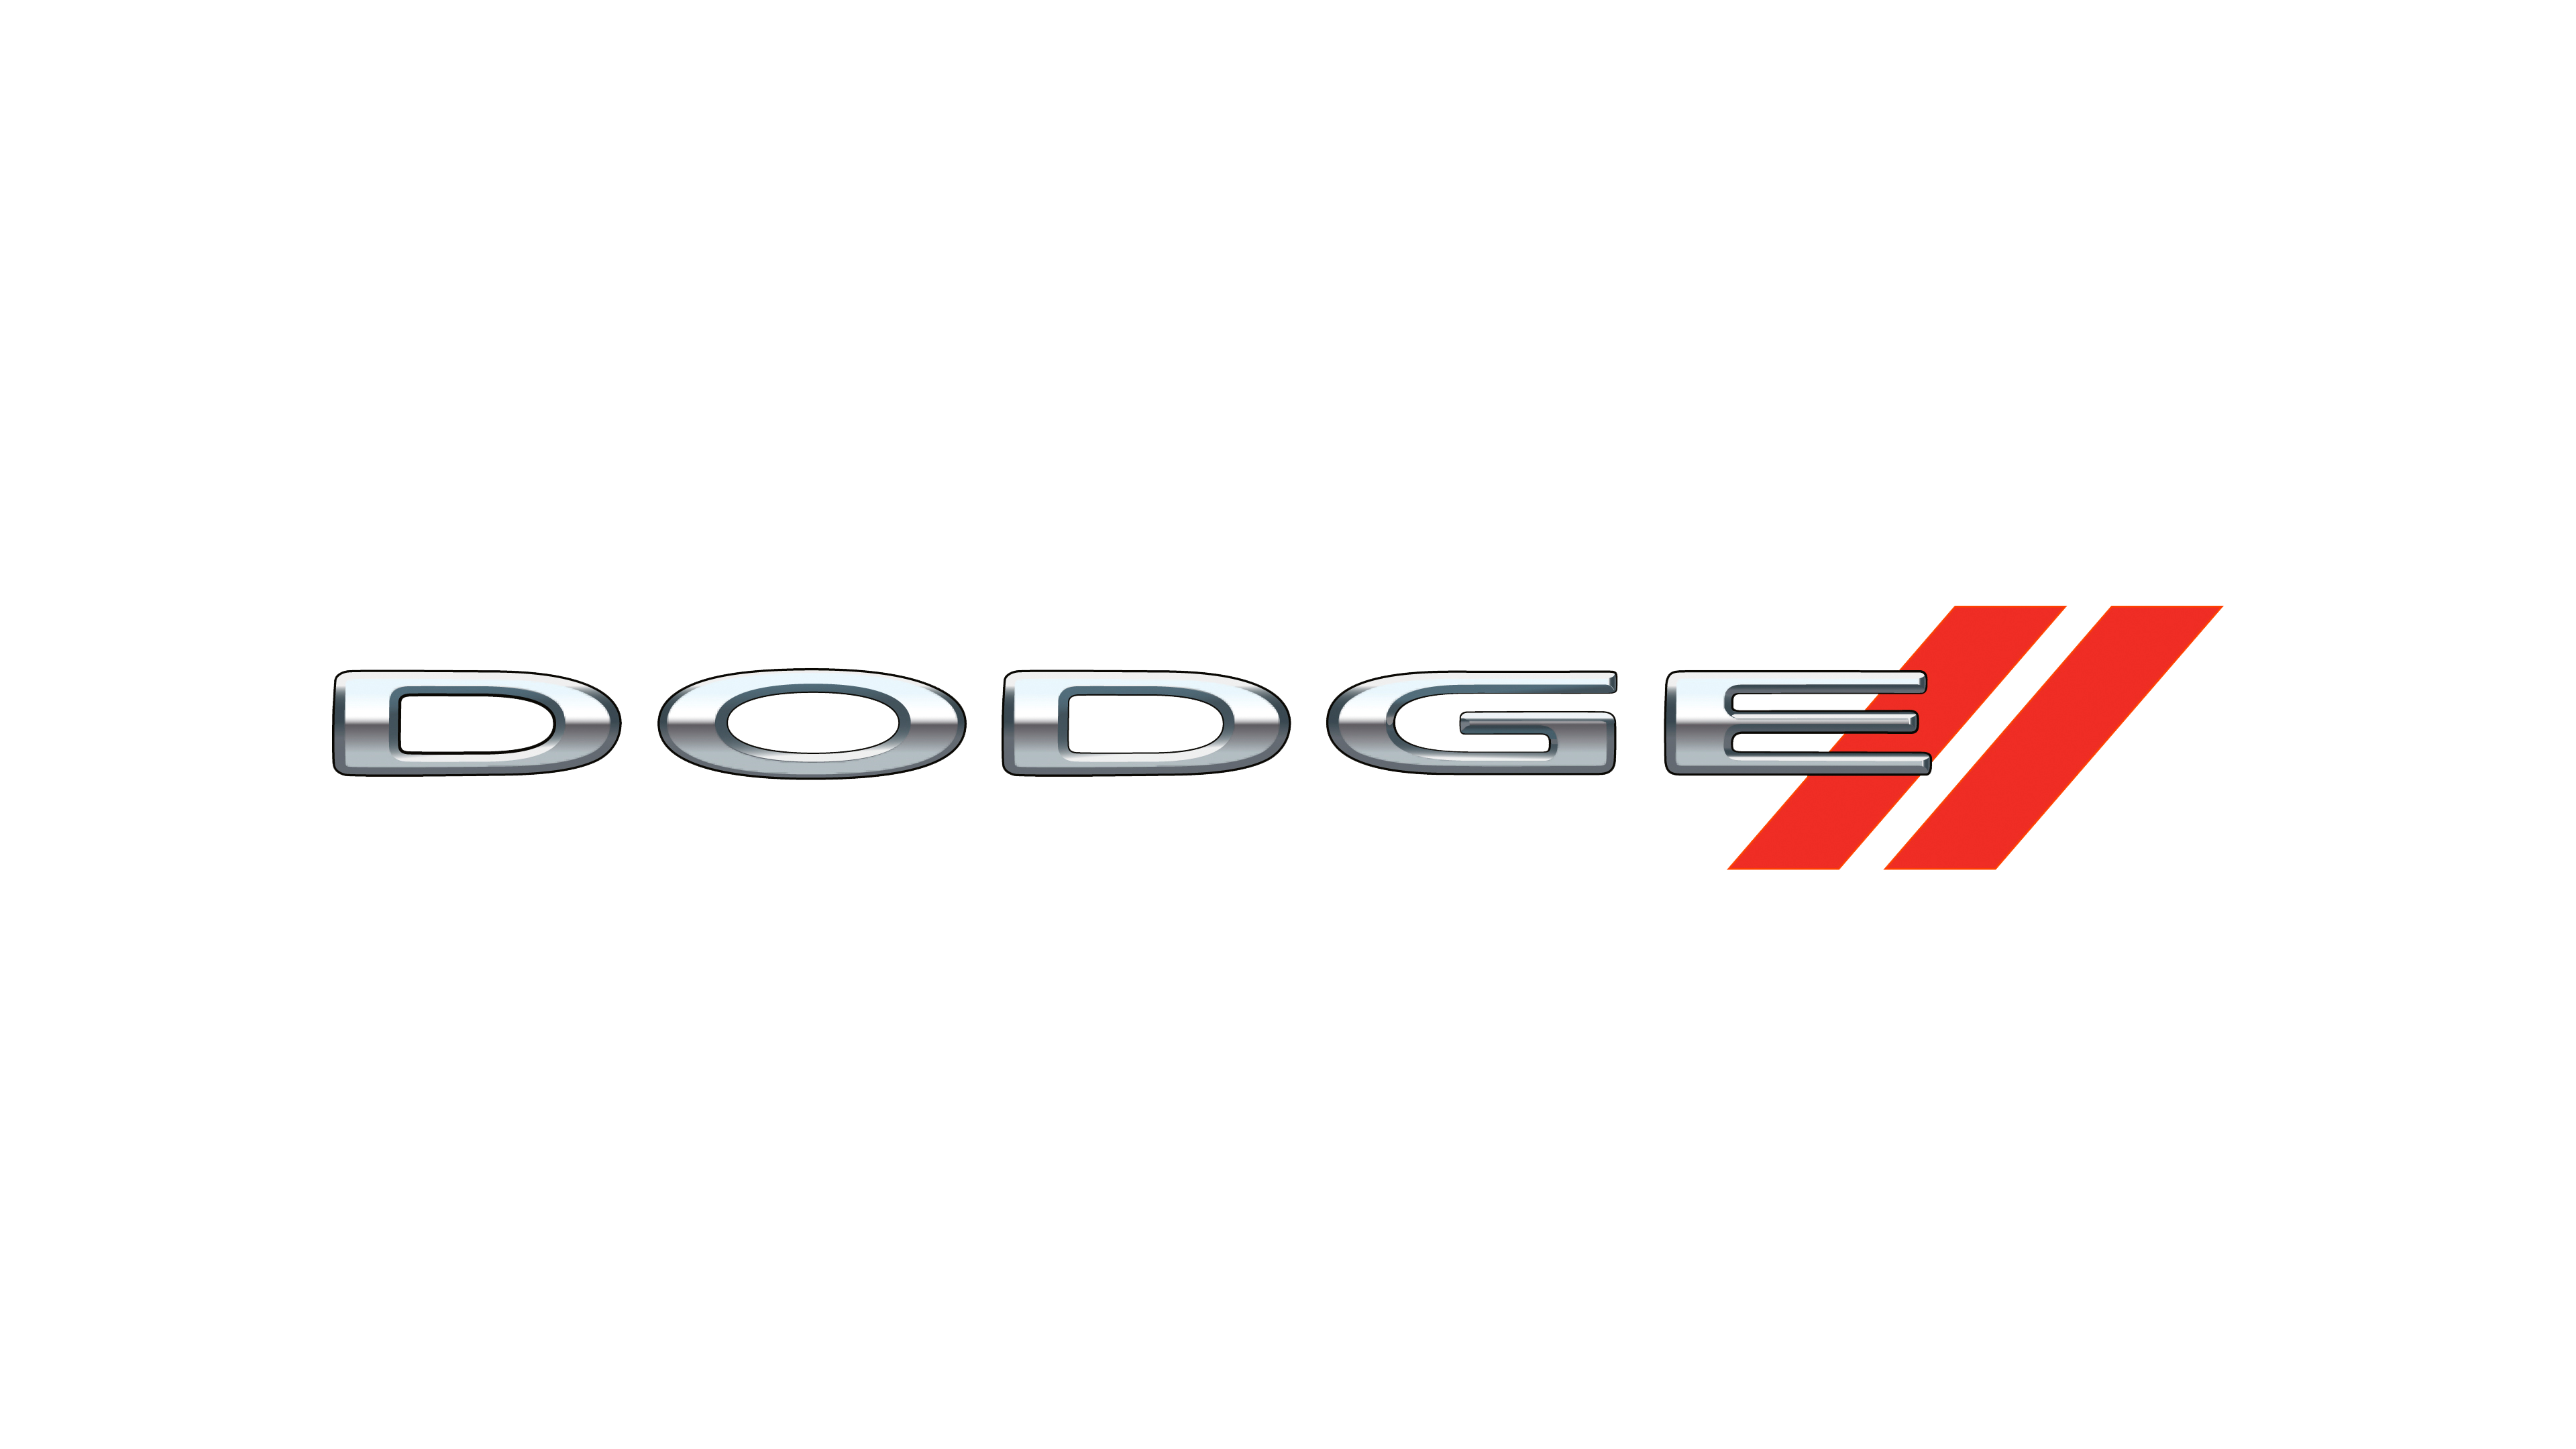 Dodge Logo Png